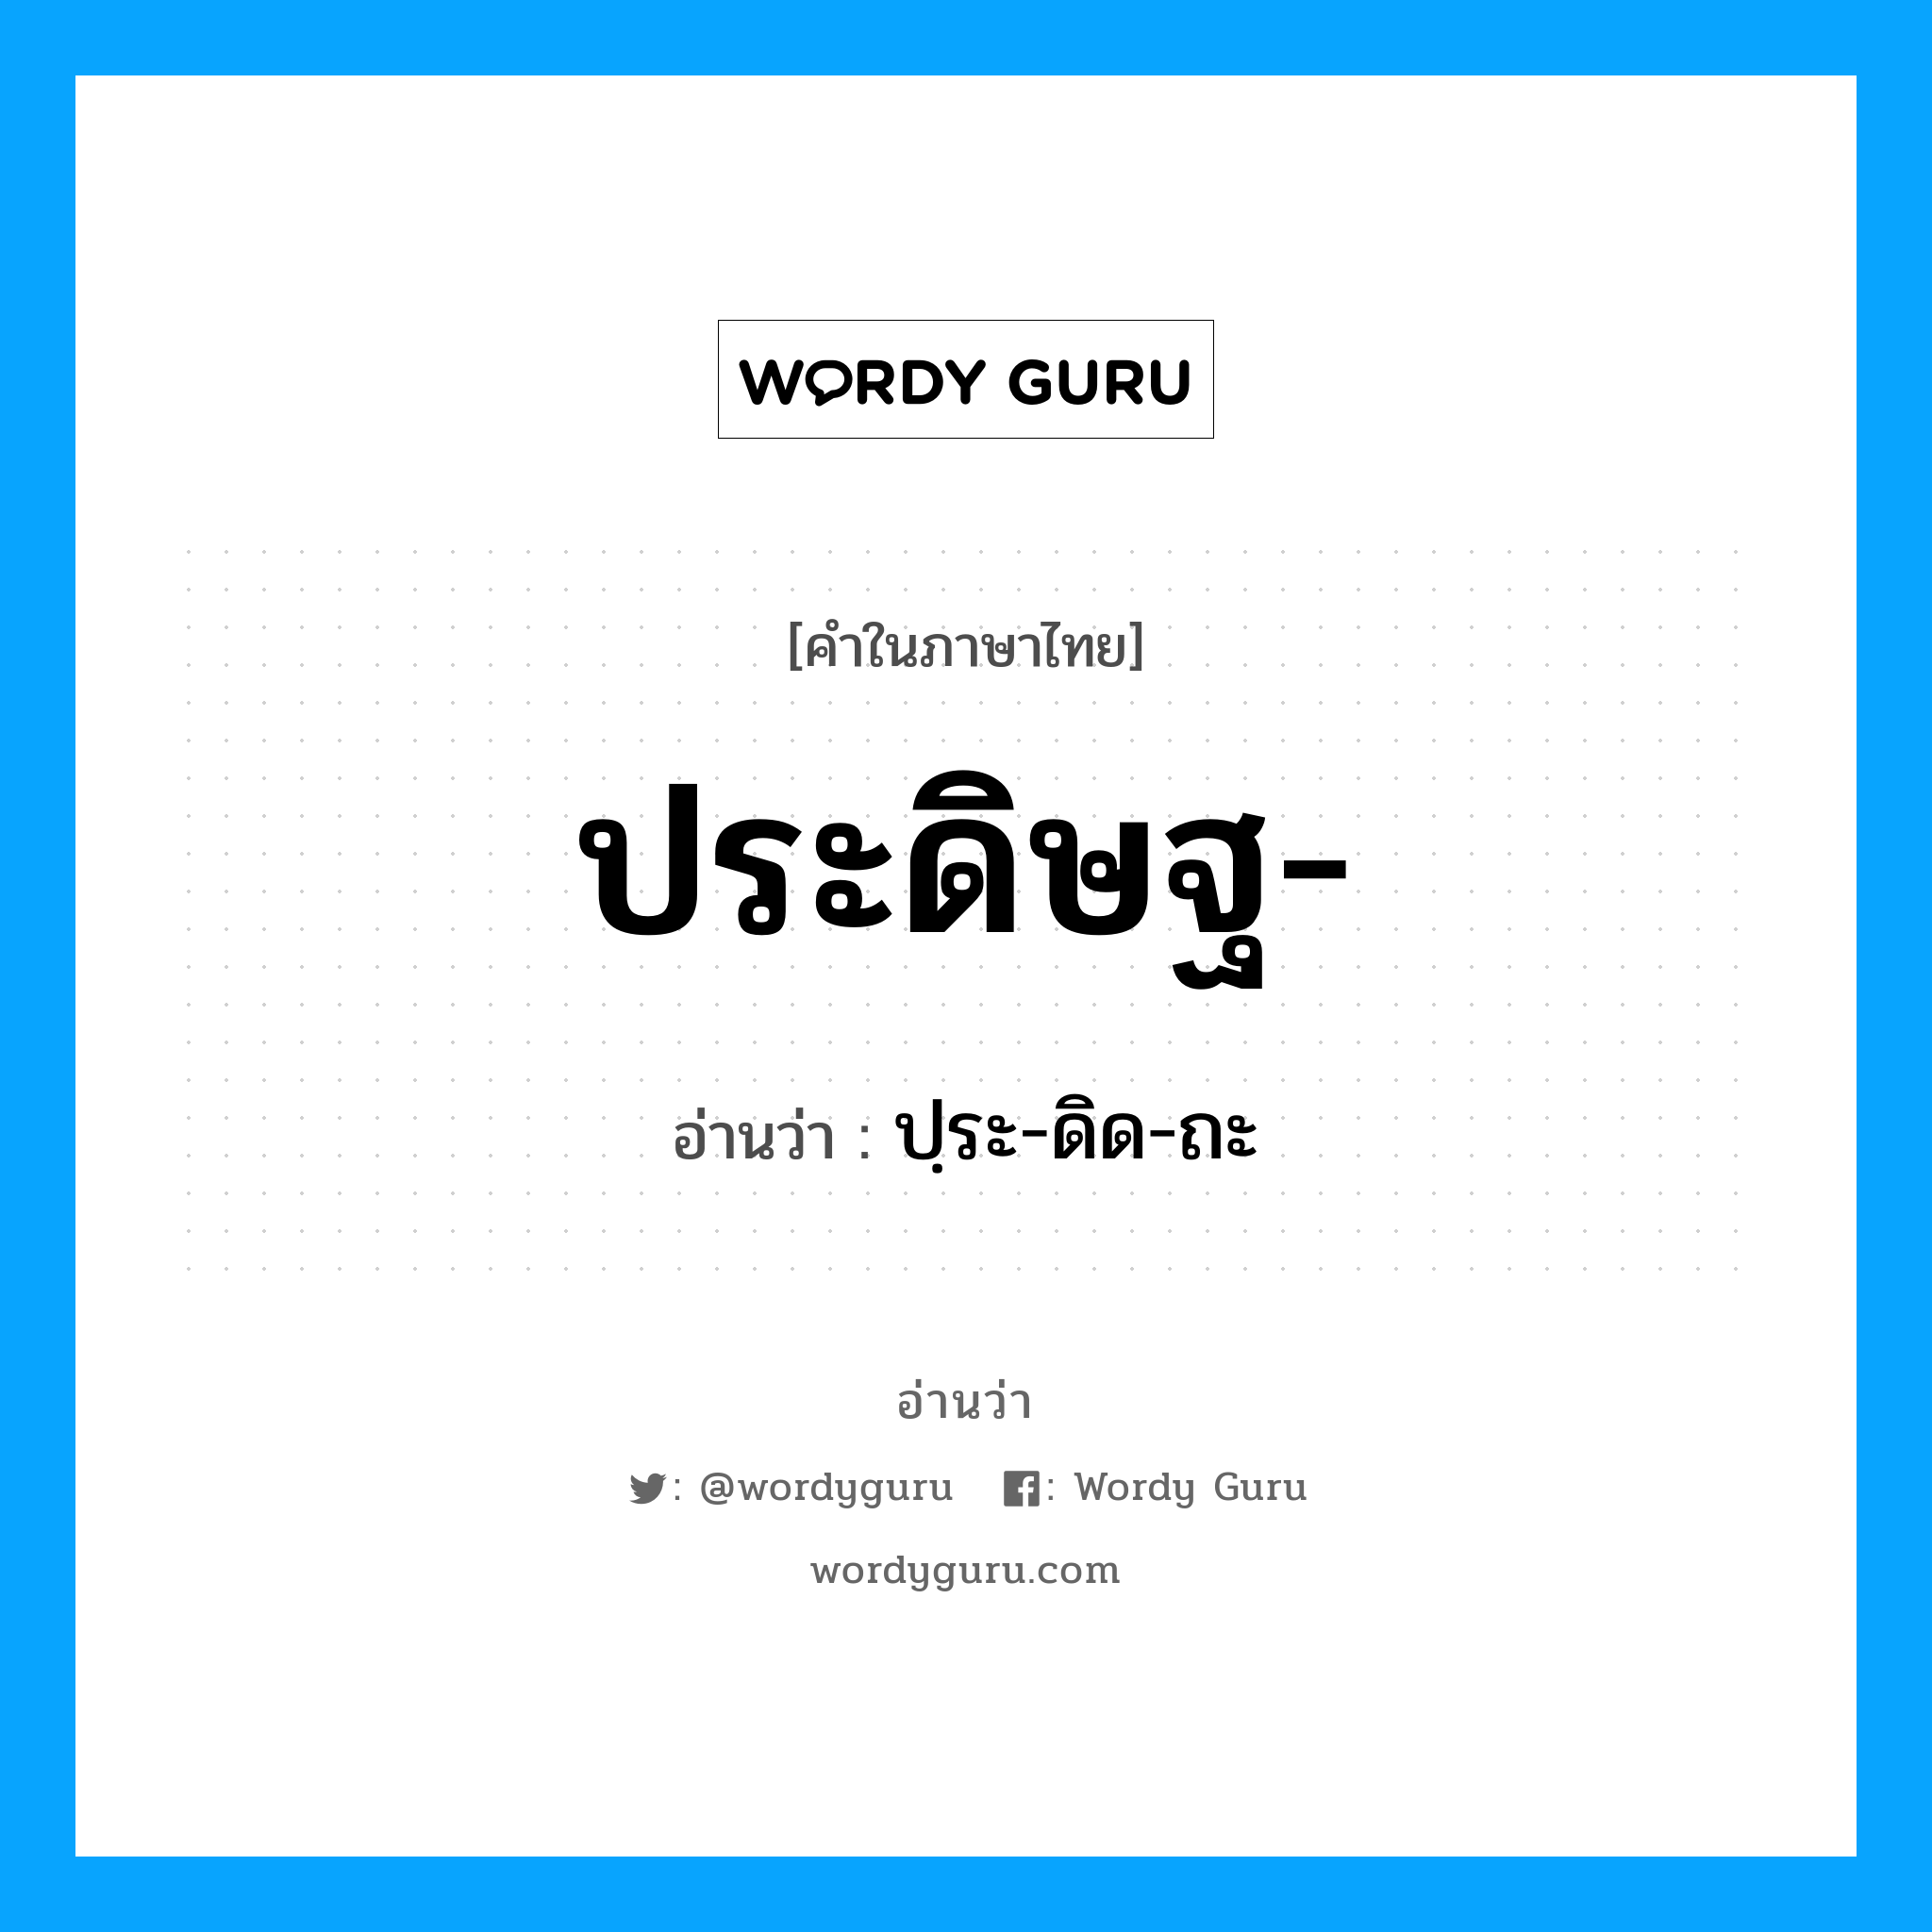 ปฺระ-ดิด-ถะ เป็นคำอ่านของคำไหน?, คำในภาษาไทย ปฺระ-ดิด-ถะ อ่านว่า ประดิษฐ-